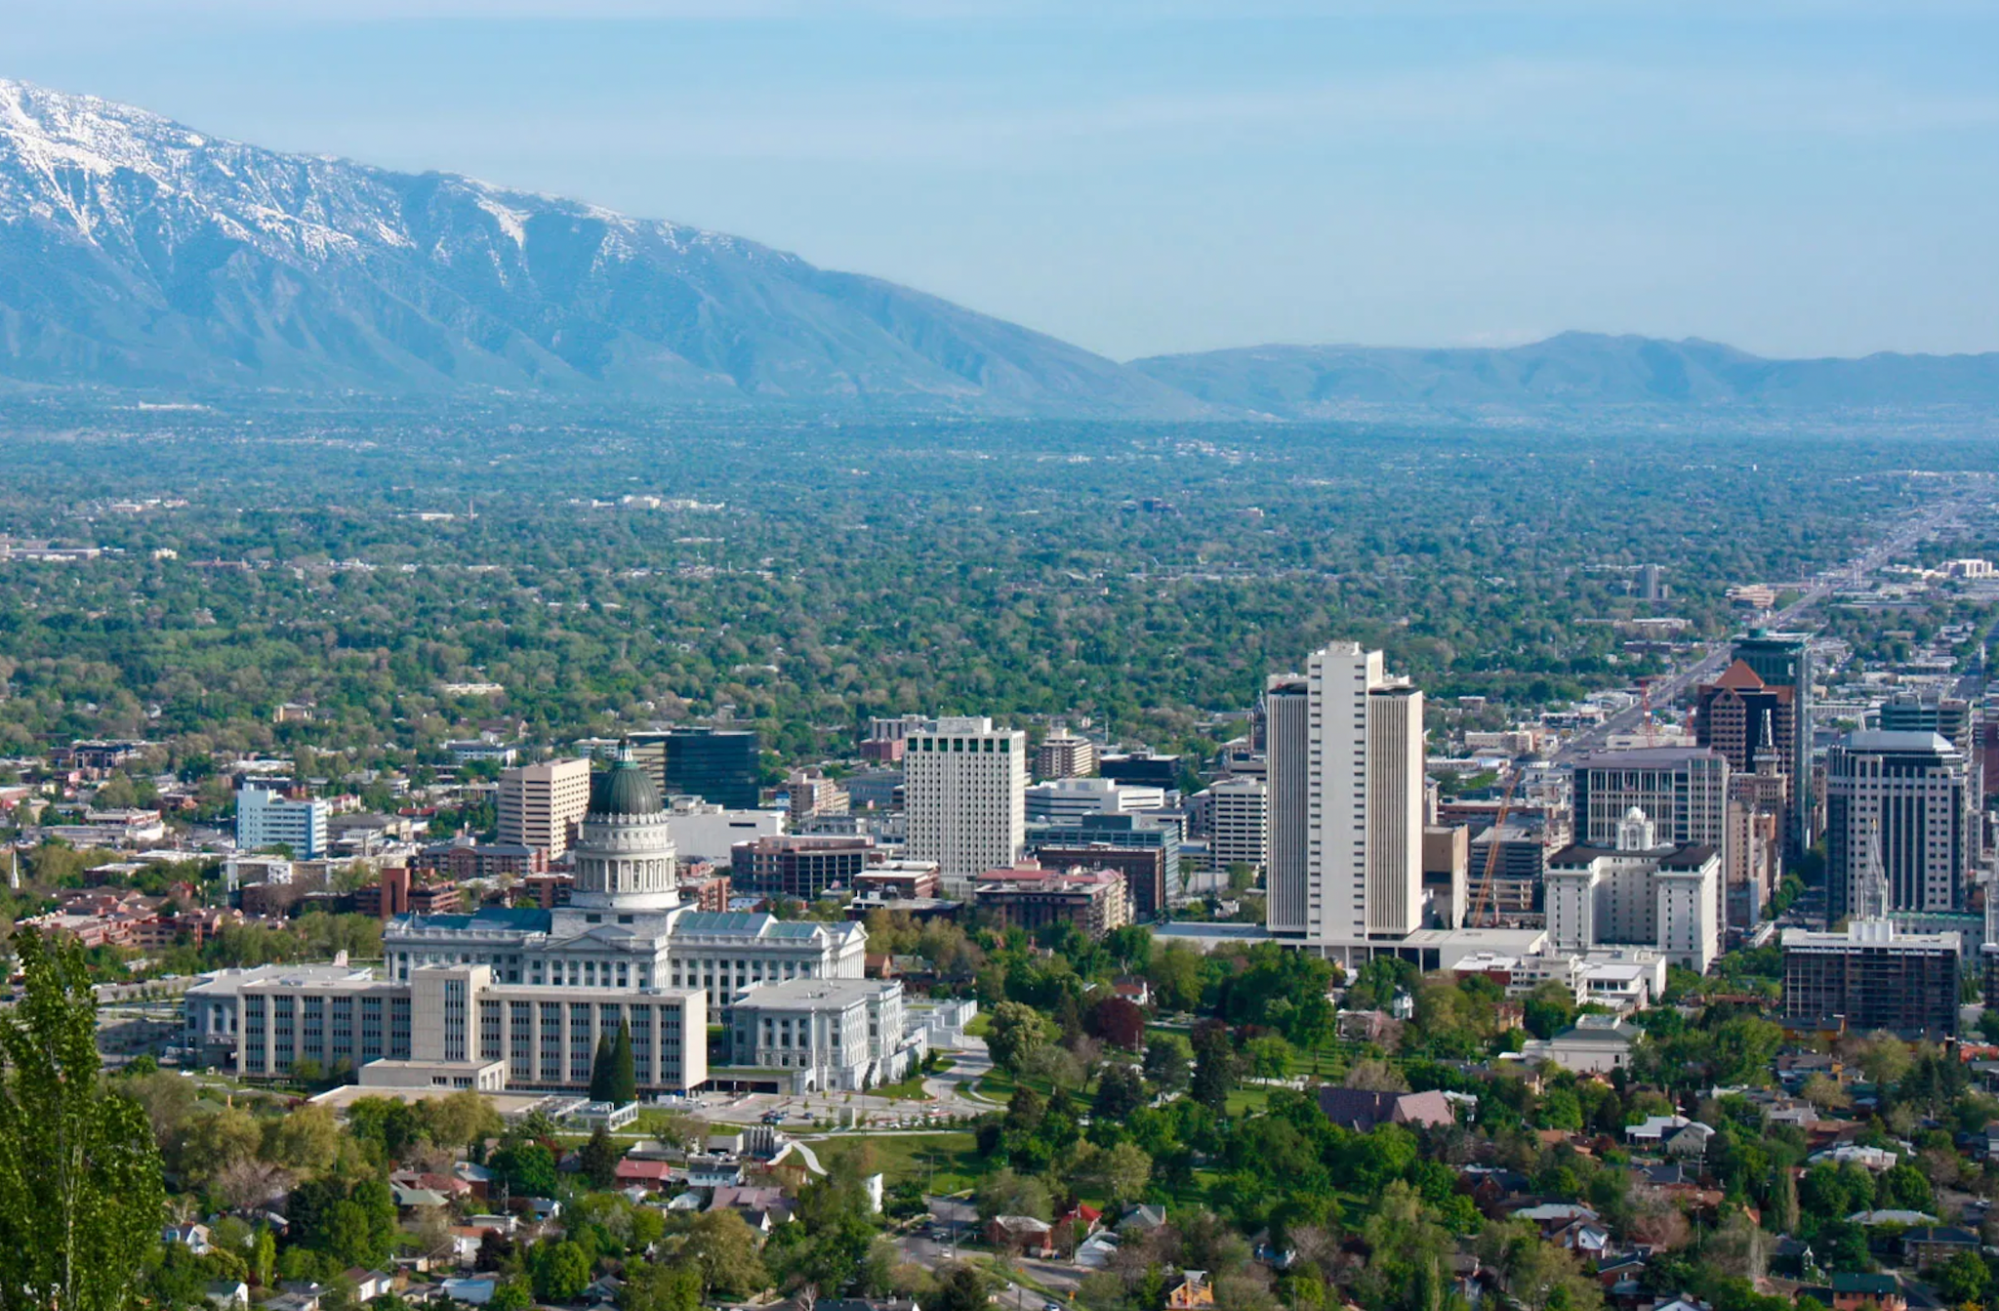 Salt Lake University of Utah